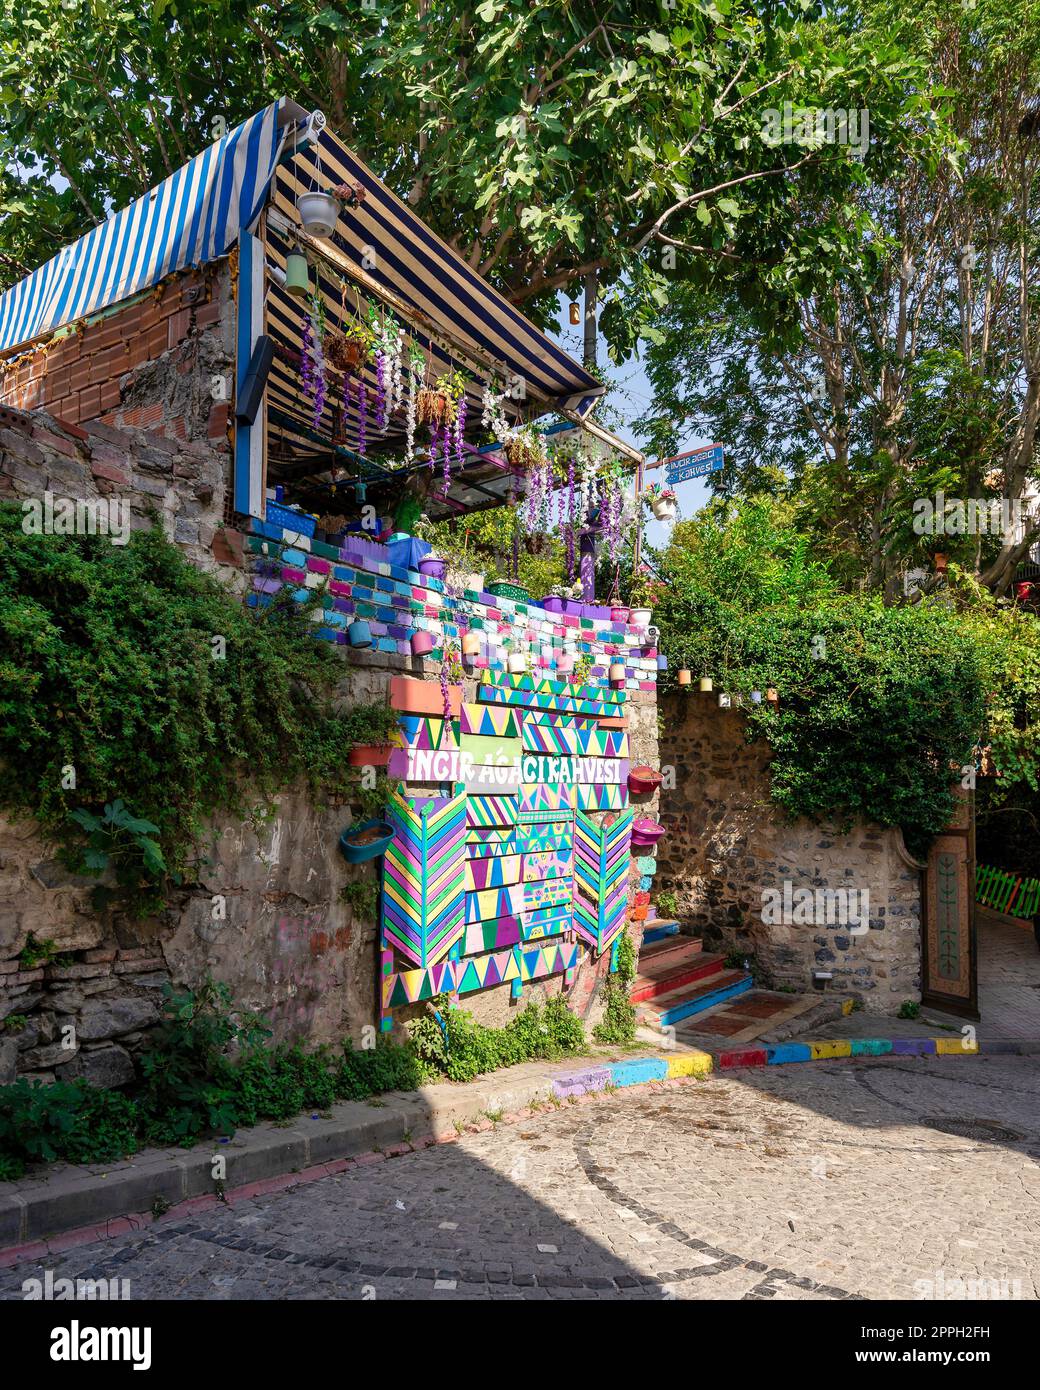 Tagsüber gibt es ein Café mit bunten Paneelen, farbenfrohen Treppen und Balat District, Istanbul, Türkei Stockfoto